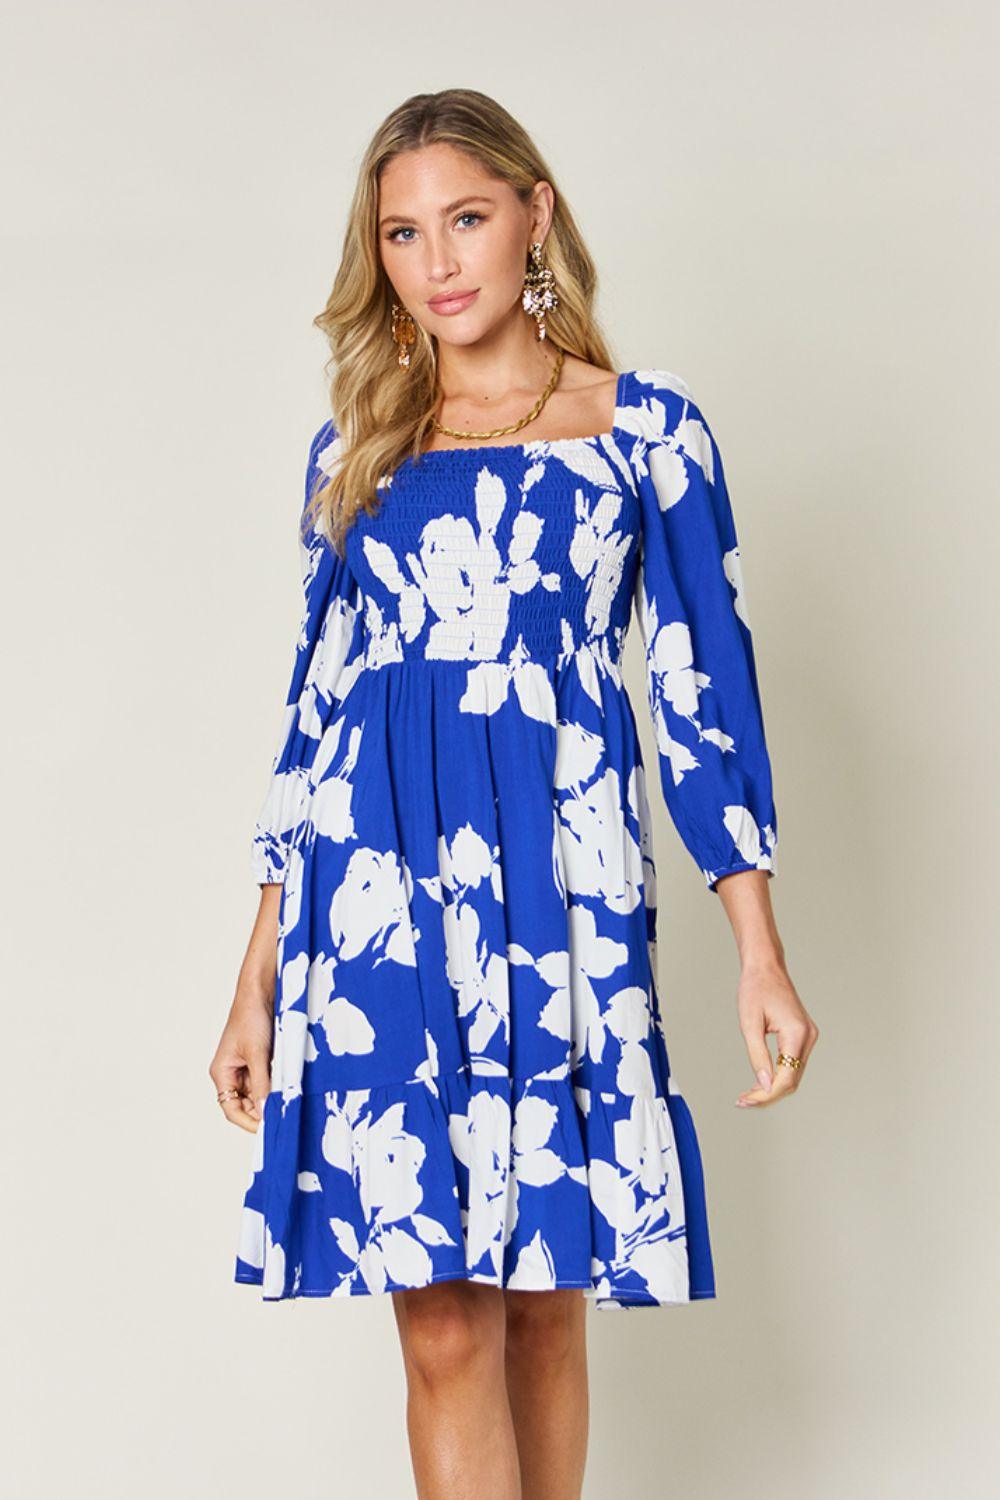 Double Take Full Size Floral Ruffle Hem Smocked Dress Royal Blue Midi Dresses